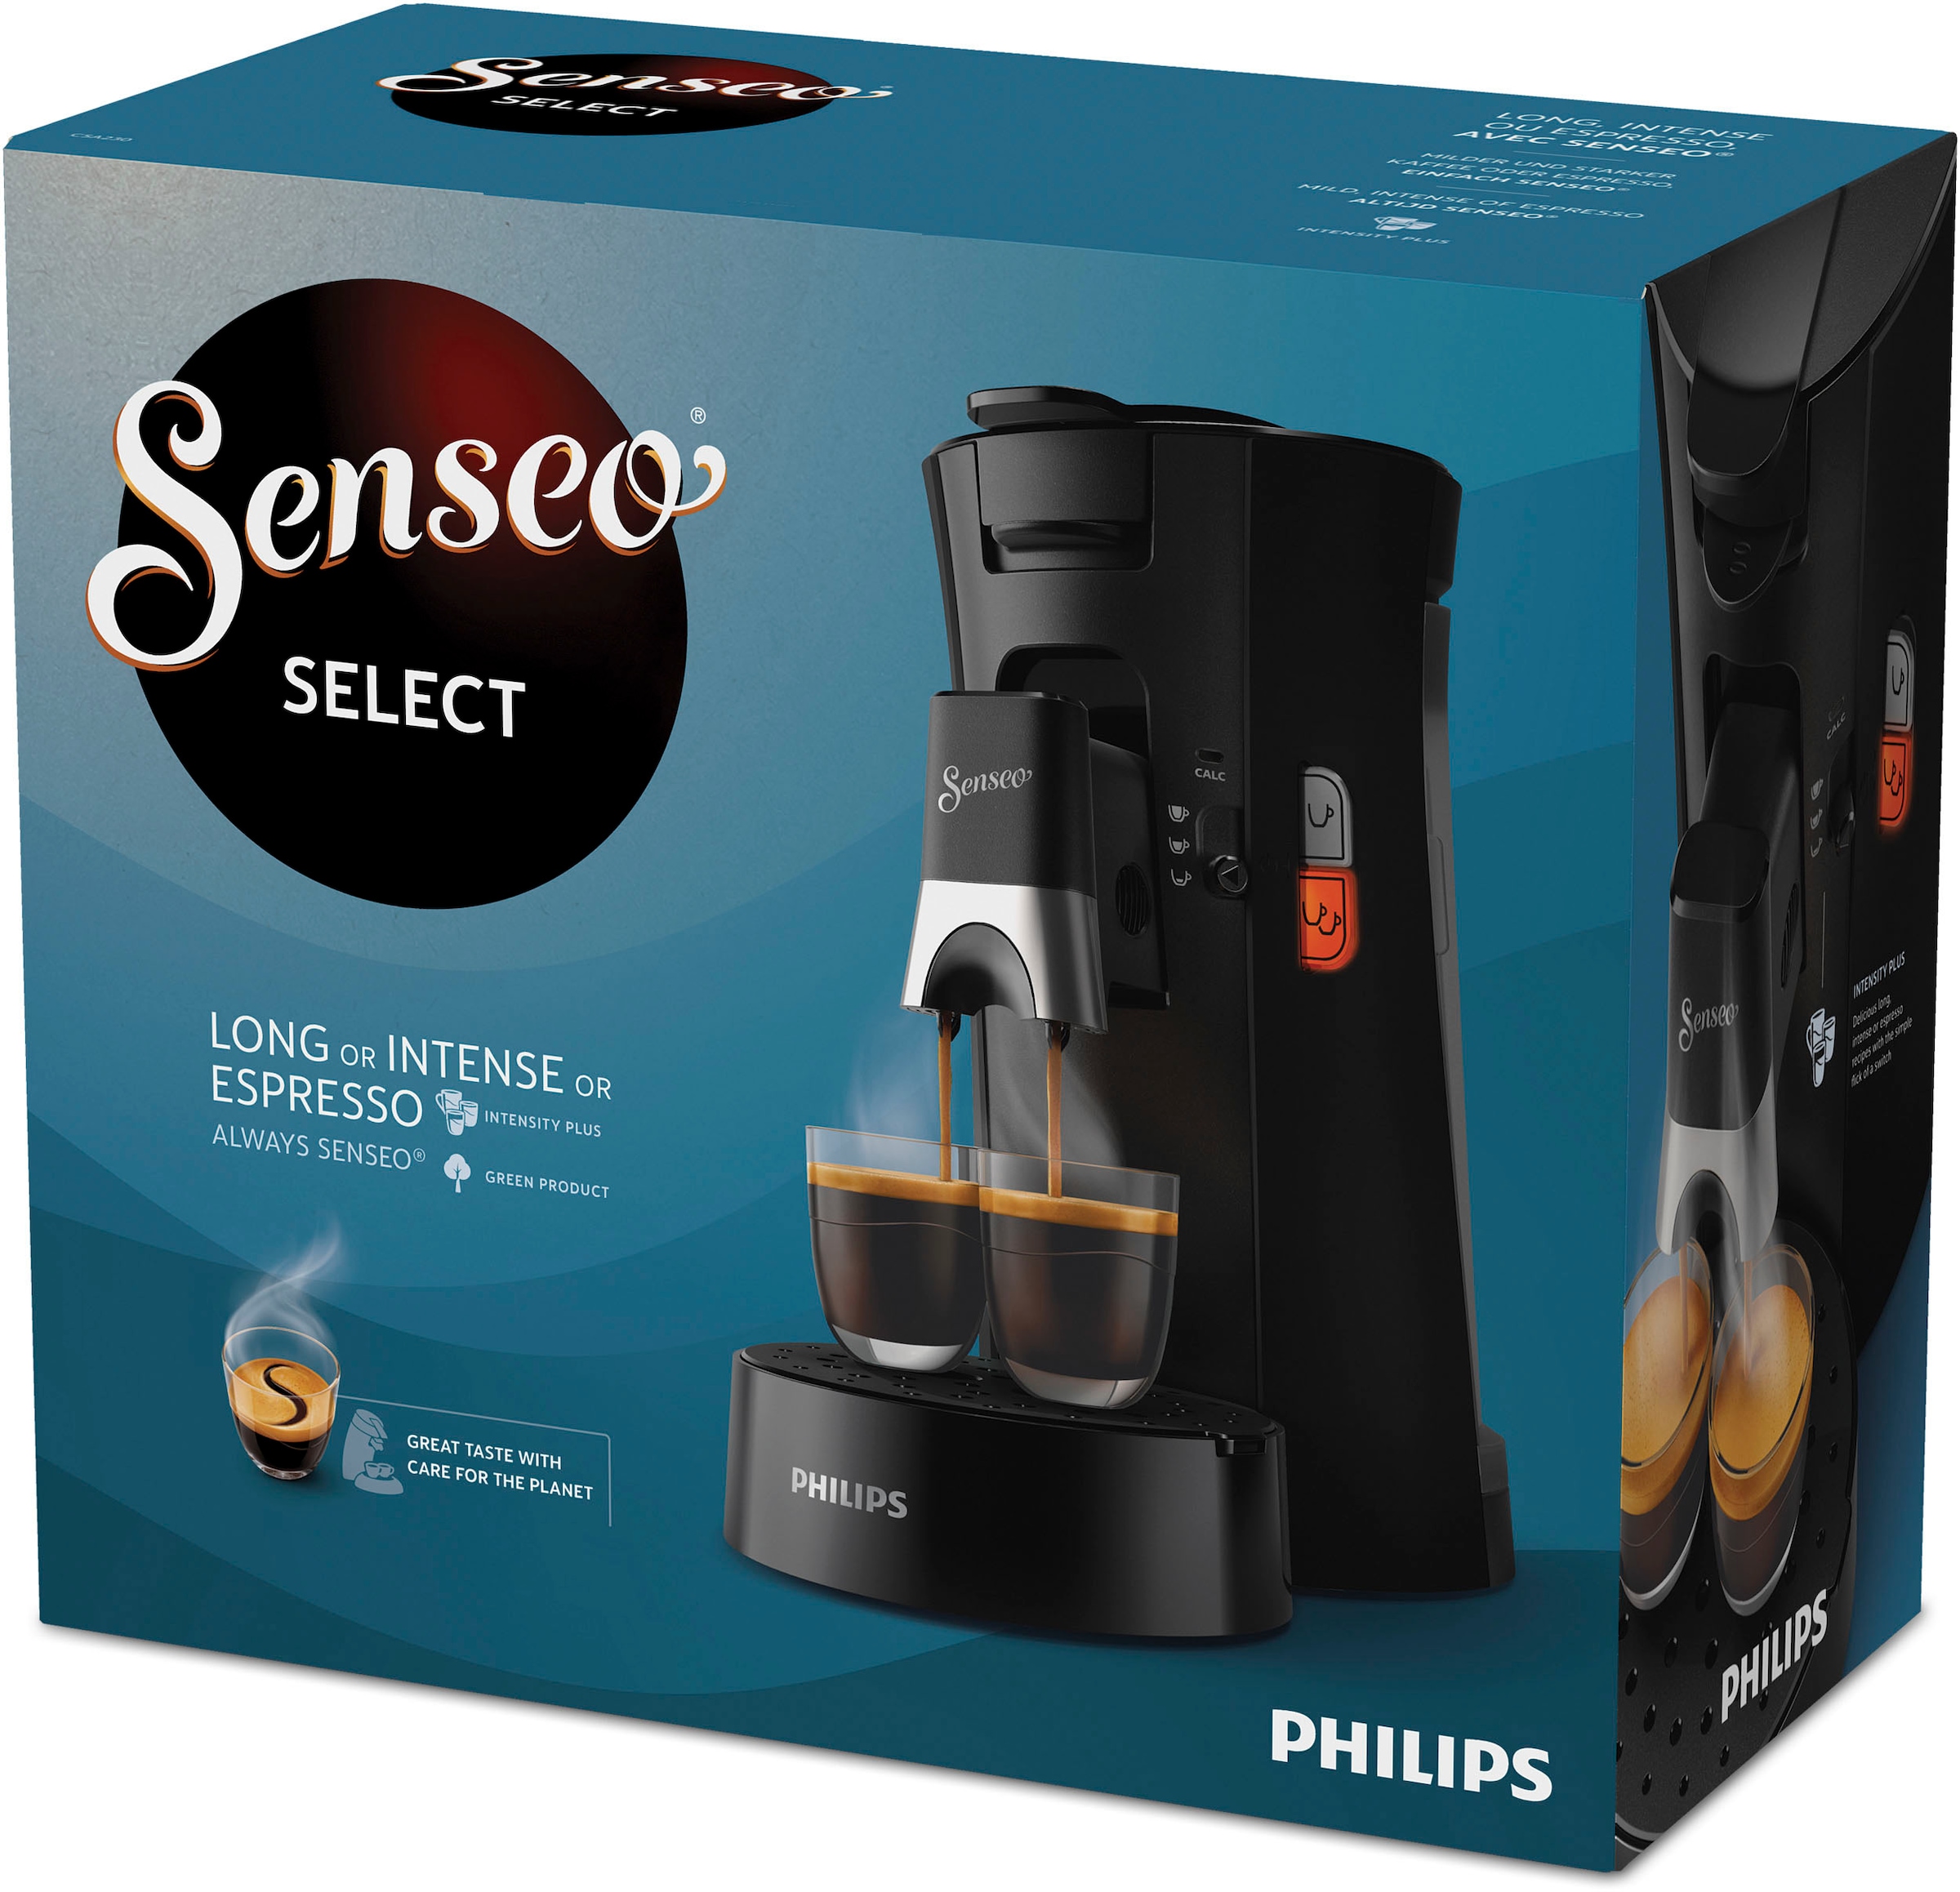 Philips Senseo Kaffeepadmaschine »Select CSA230/69, aus 21% recyceltem Plastik«, Crema Plus, 100 Senseo Pads kaufen und bis zu 33 € zurückerhalten